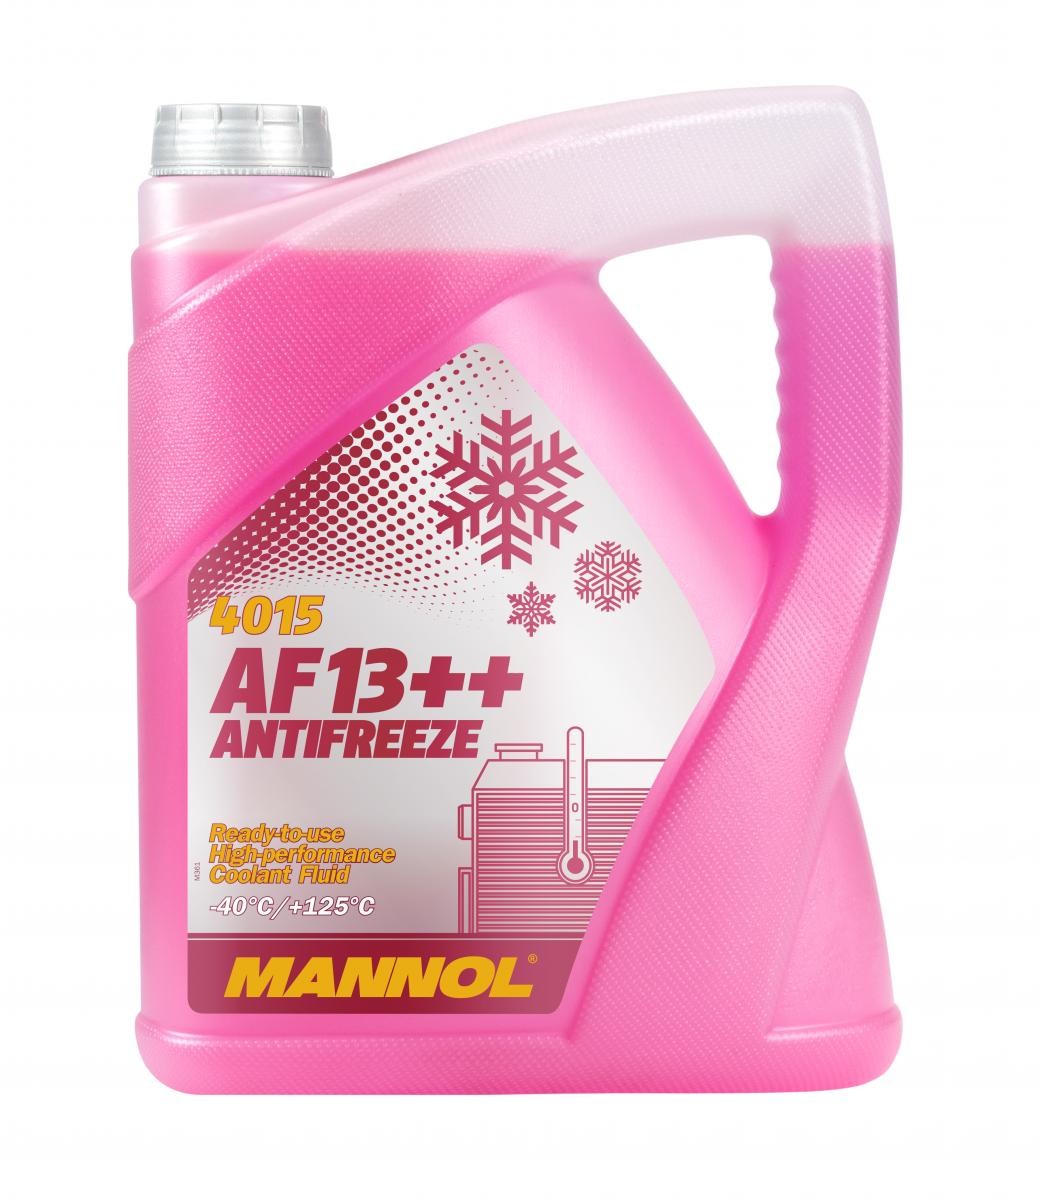 Kupite MANNOL Sredstvo proti zmrzovanju hladilne vode (antifriz) MN4015-5 za MITSUBISHI po zmerni ceni